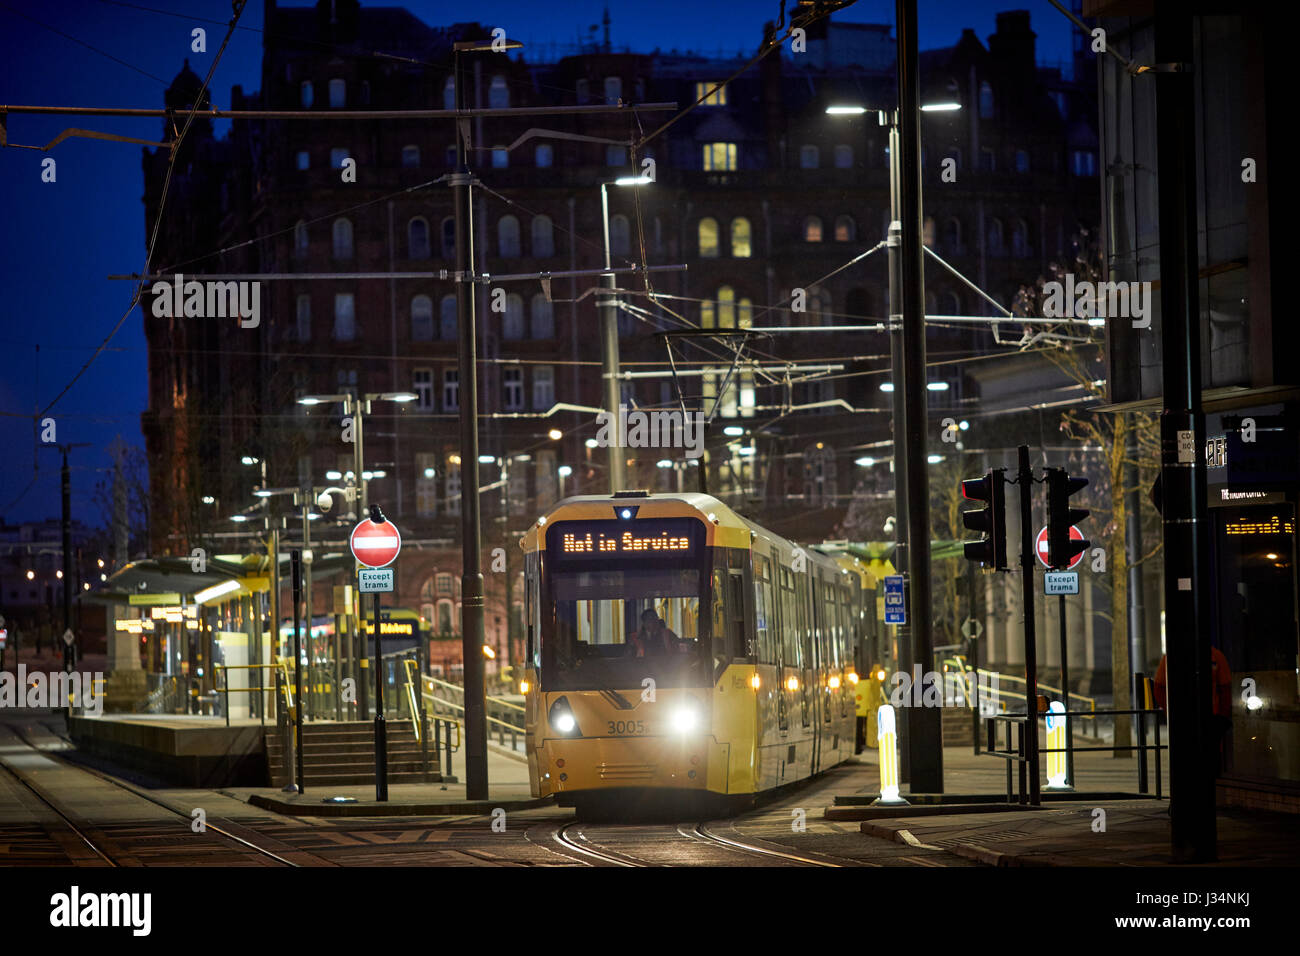 Le centre-ville de Manchester Metrolink tram tôt le matin à St Peters Square. Banque D'Images